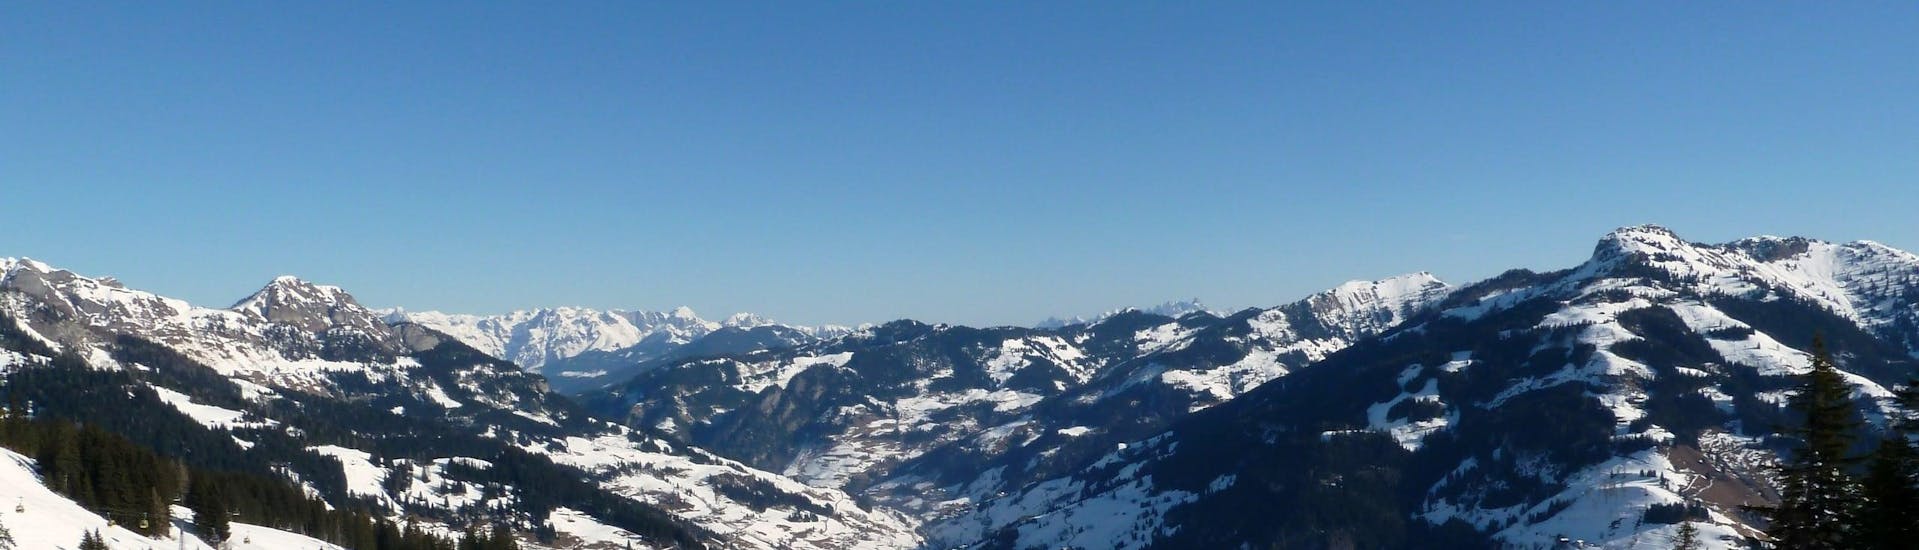 Ausblick auf die sonnige Berglandschaft beim Skifahren lernen mit den Skischulen in Großarl.